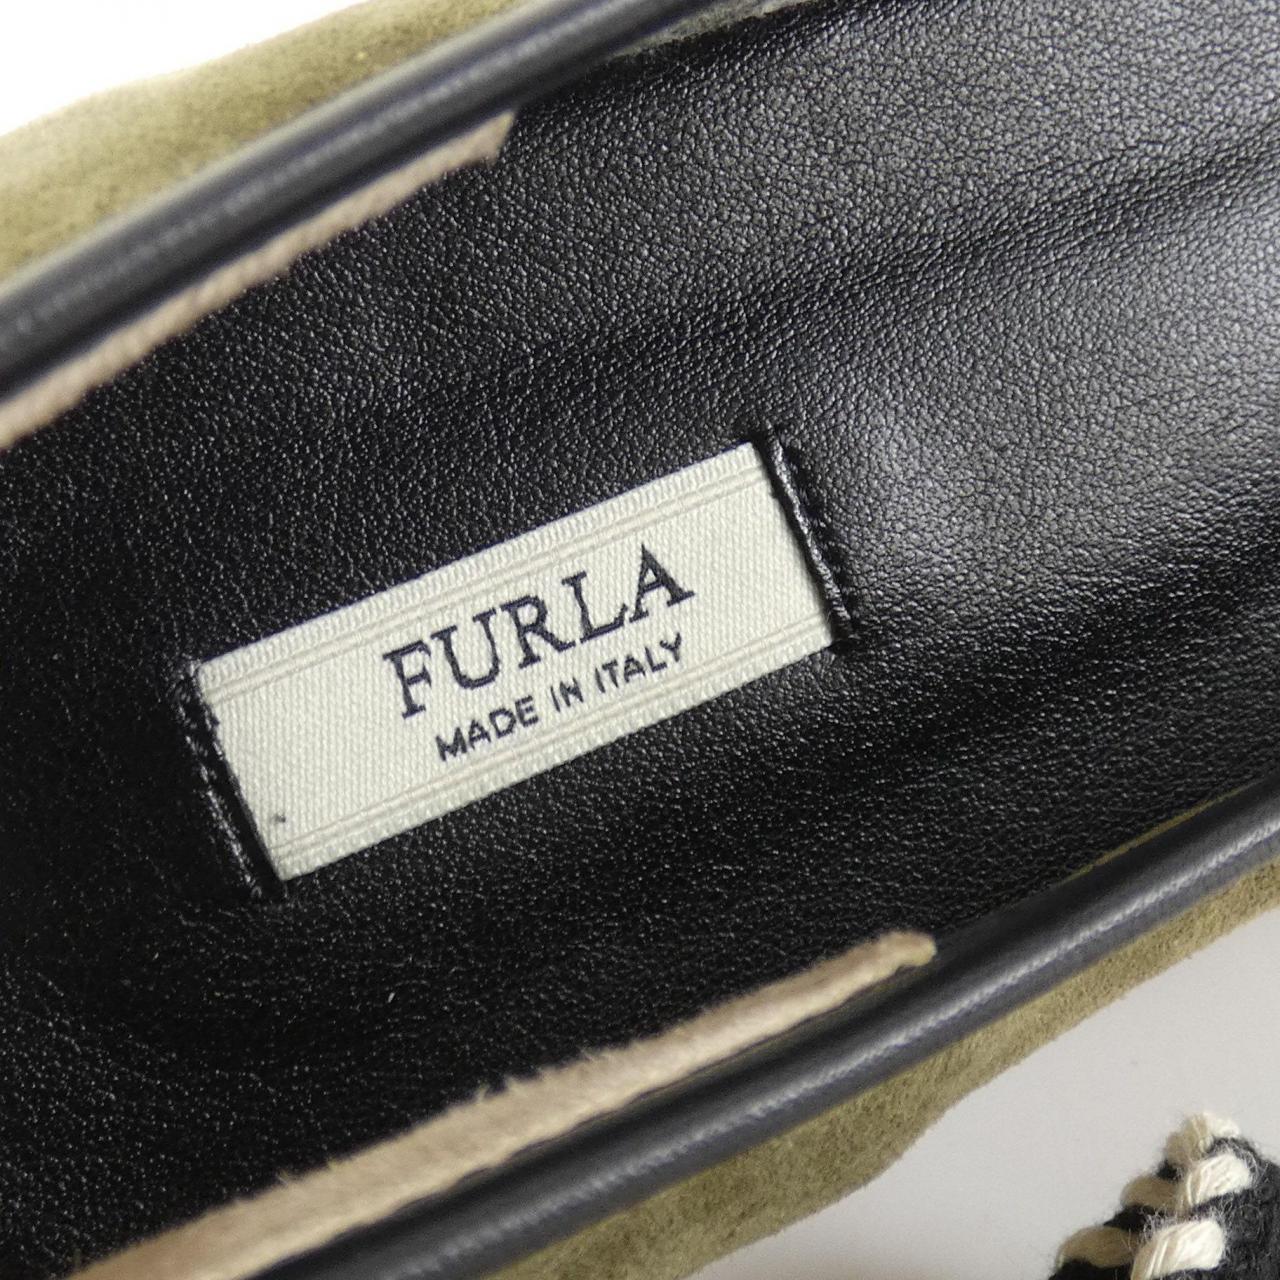 Furla shoes